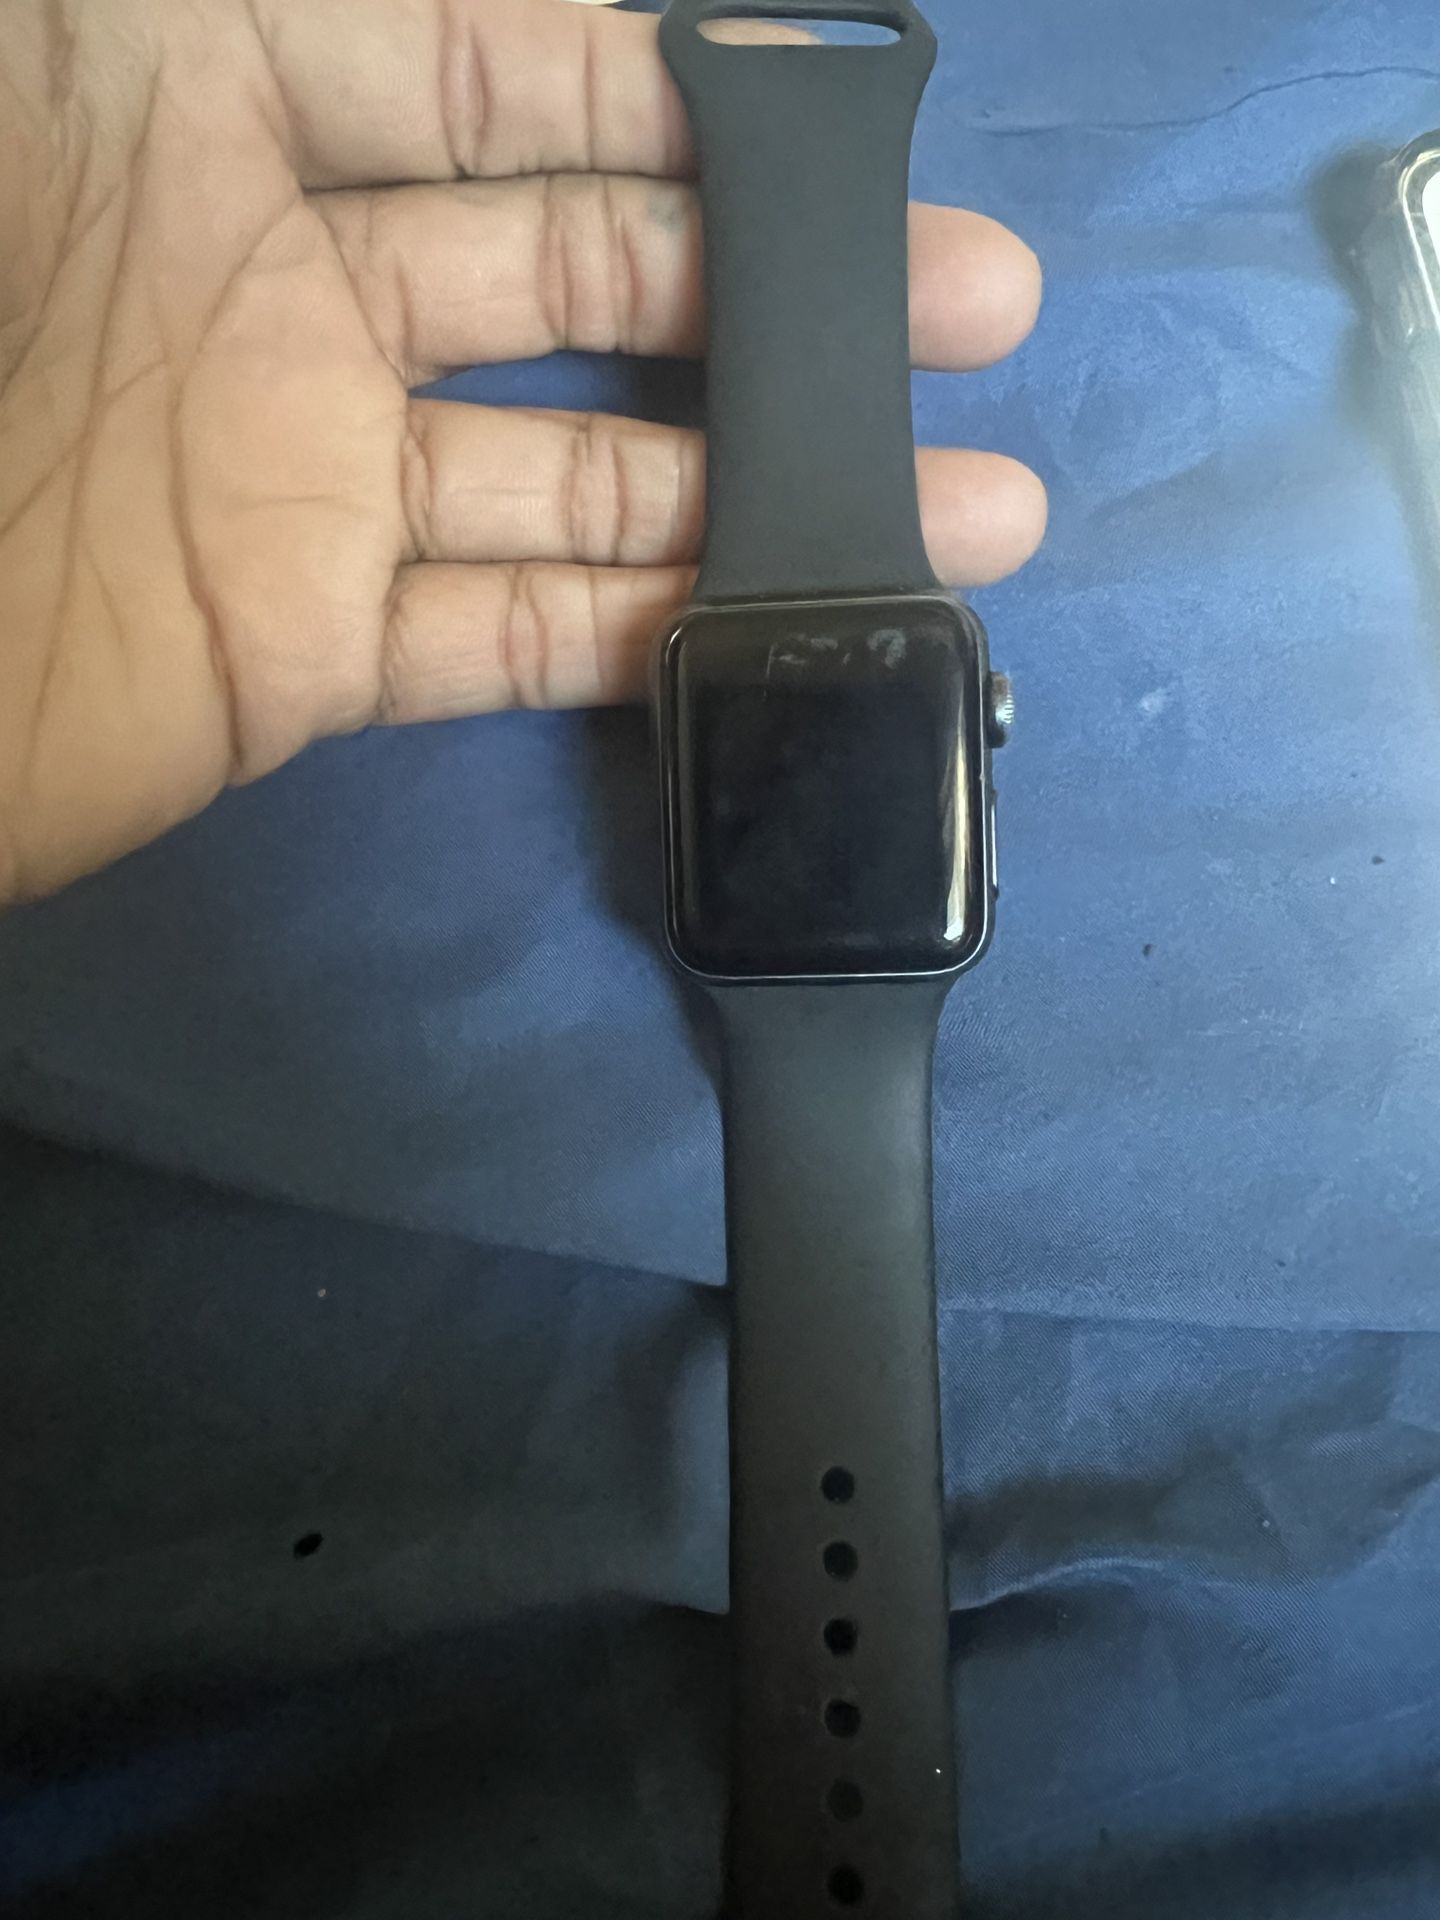 Apple Watch Series 3 Black 